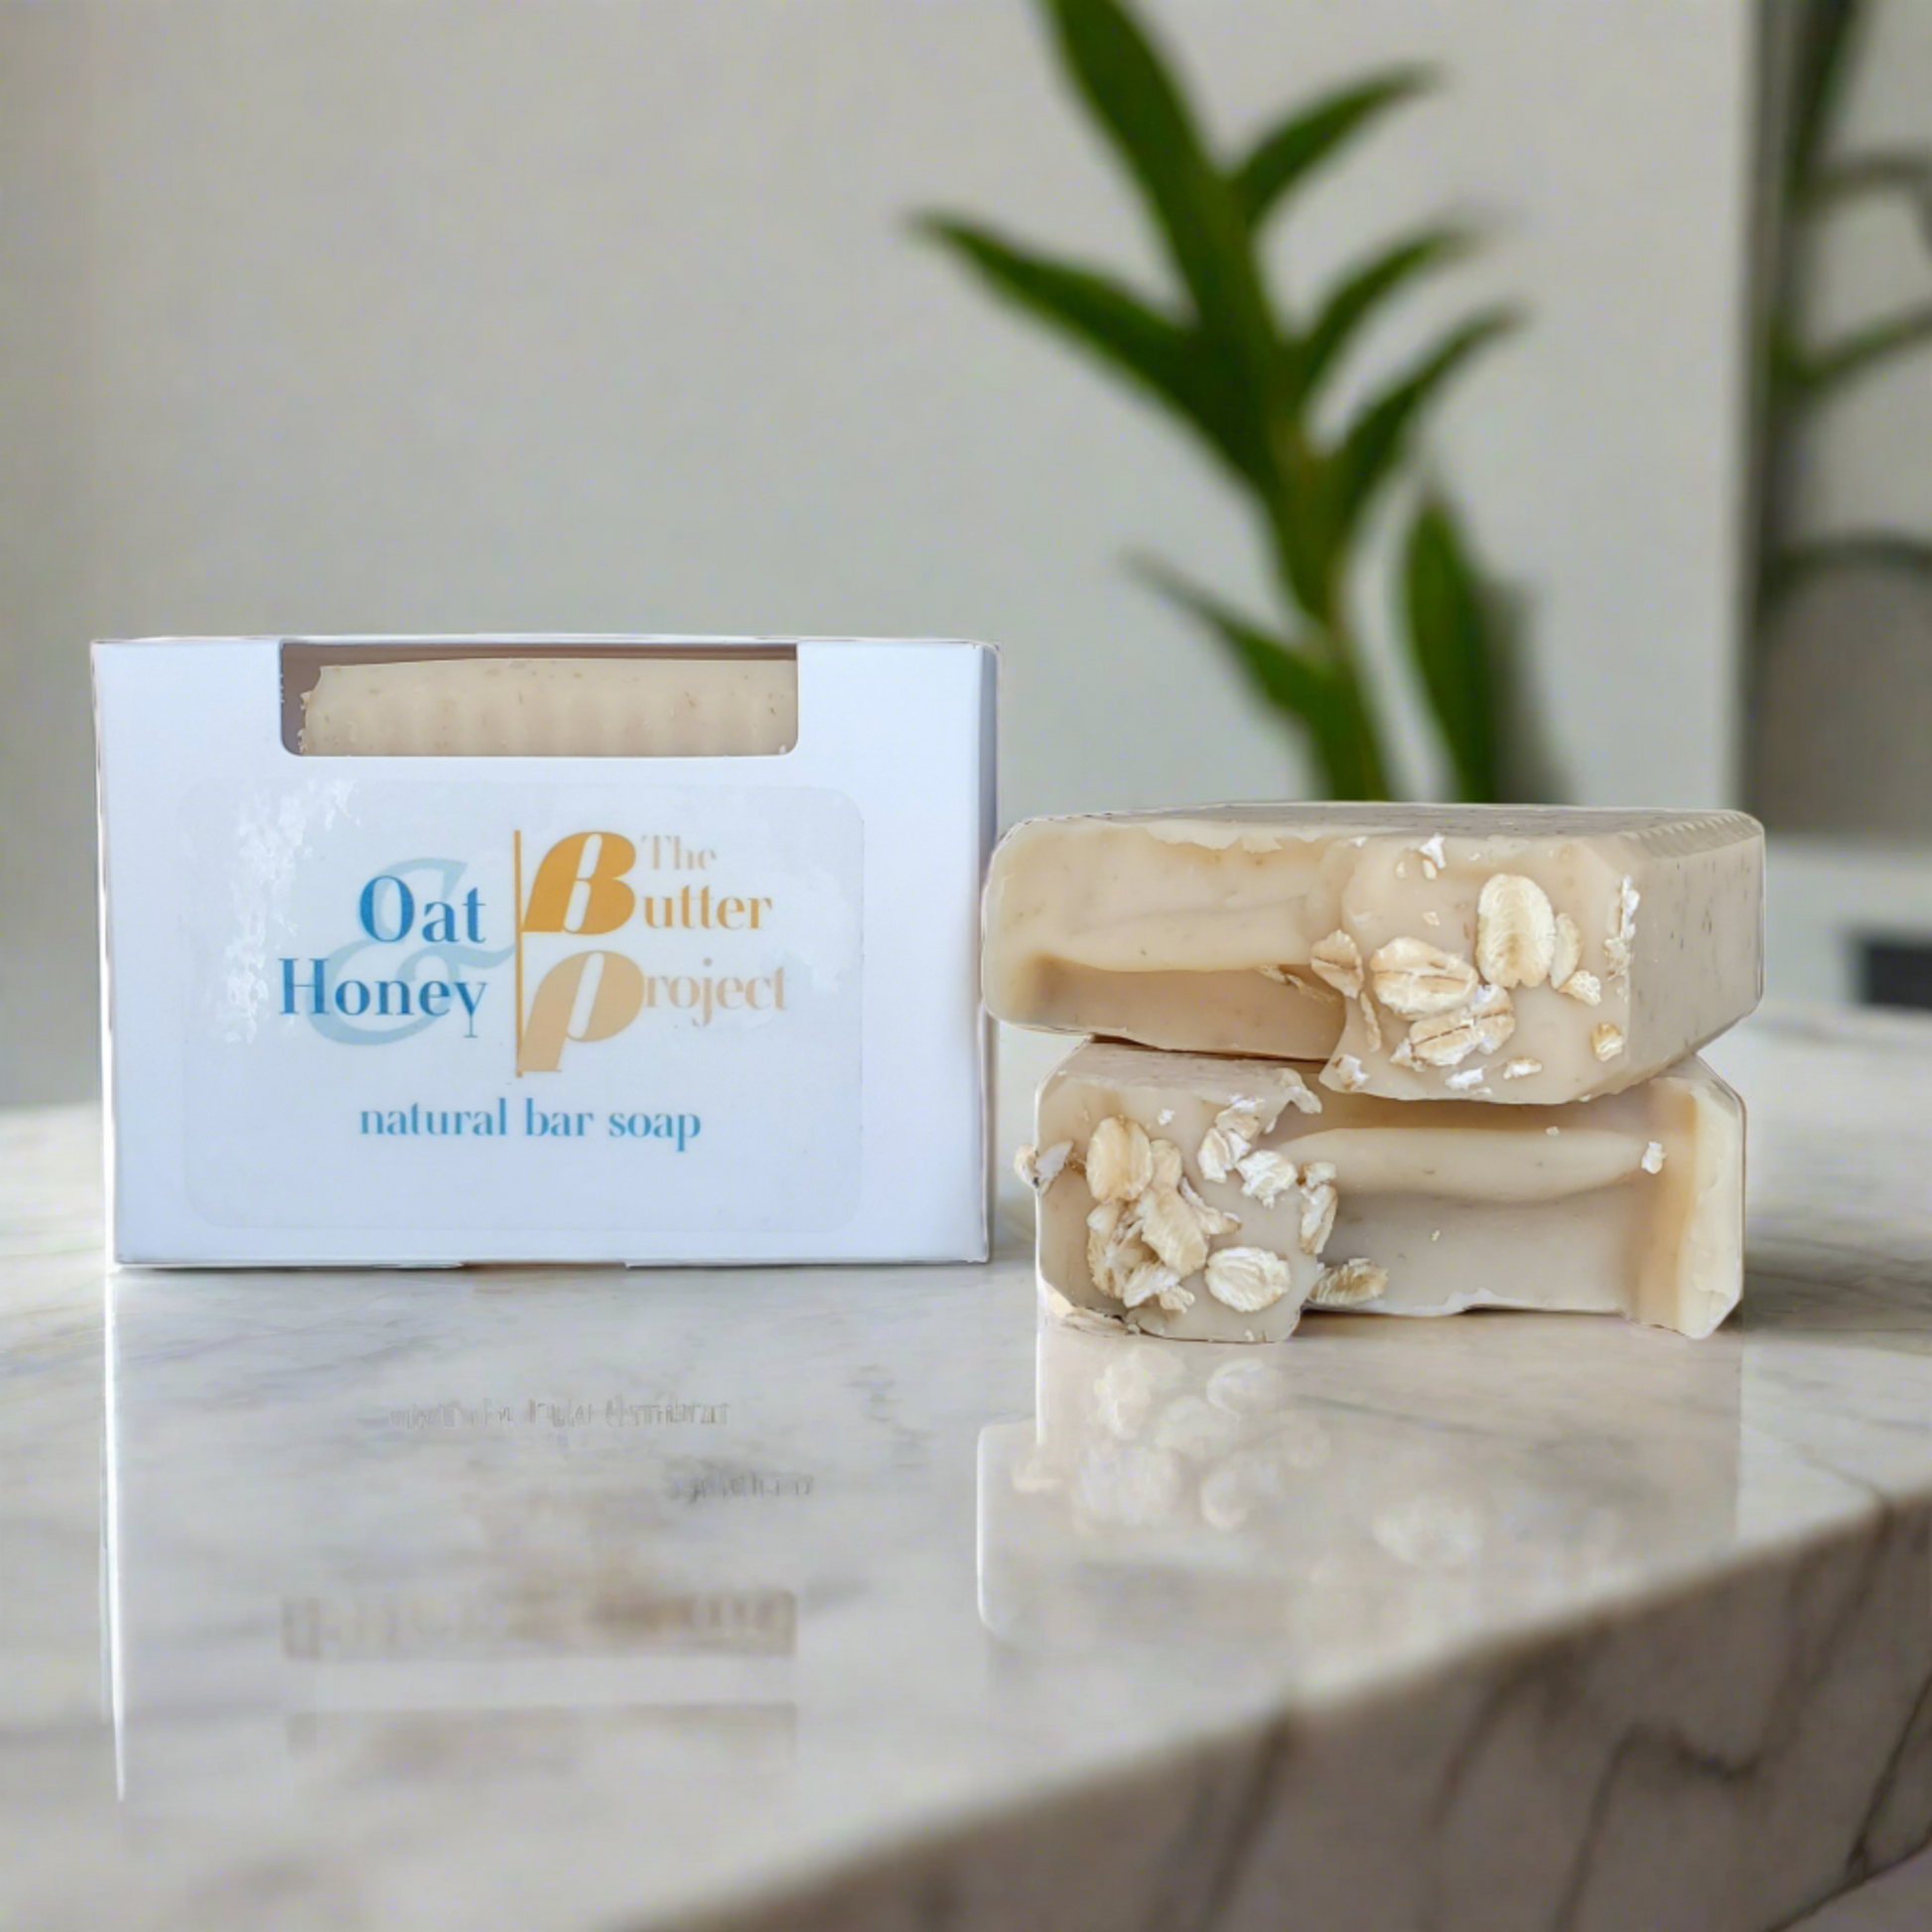 Image of Oat & Honey Natural Bar Soap Box and two Oat & Honey Natural Bar Soap from The Butter Project.